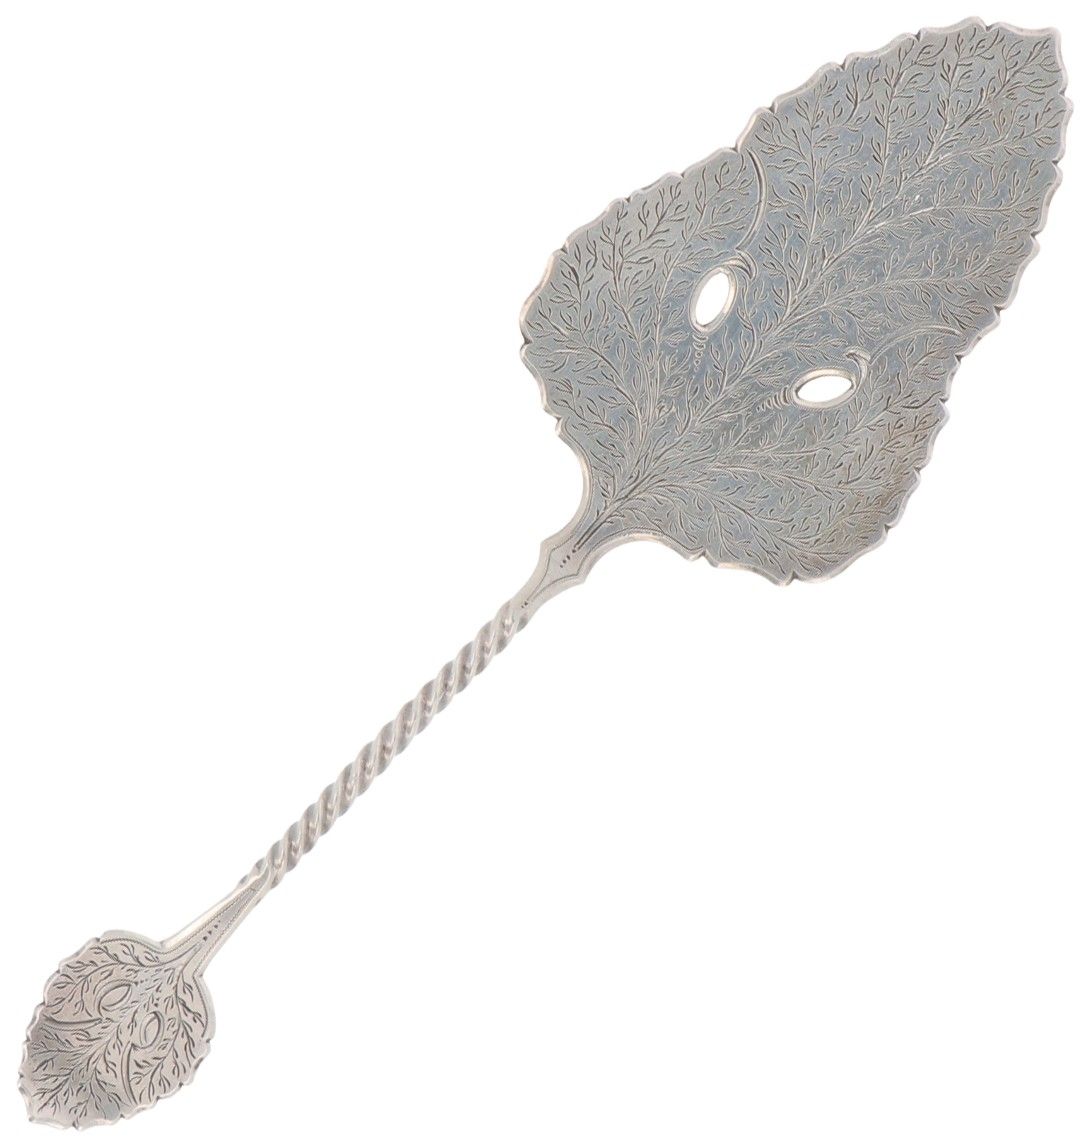 Pastry scoop silver. 执行的是扭曲的茎和风格化的叶子图案。荷兰，Schoonhoven，Johannes van Halteren，1896&hellip;